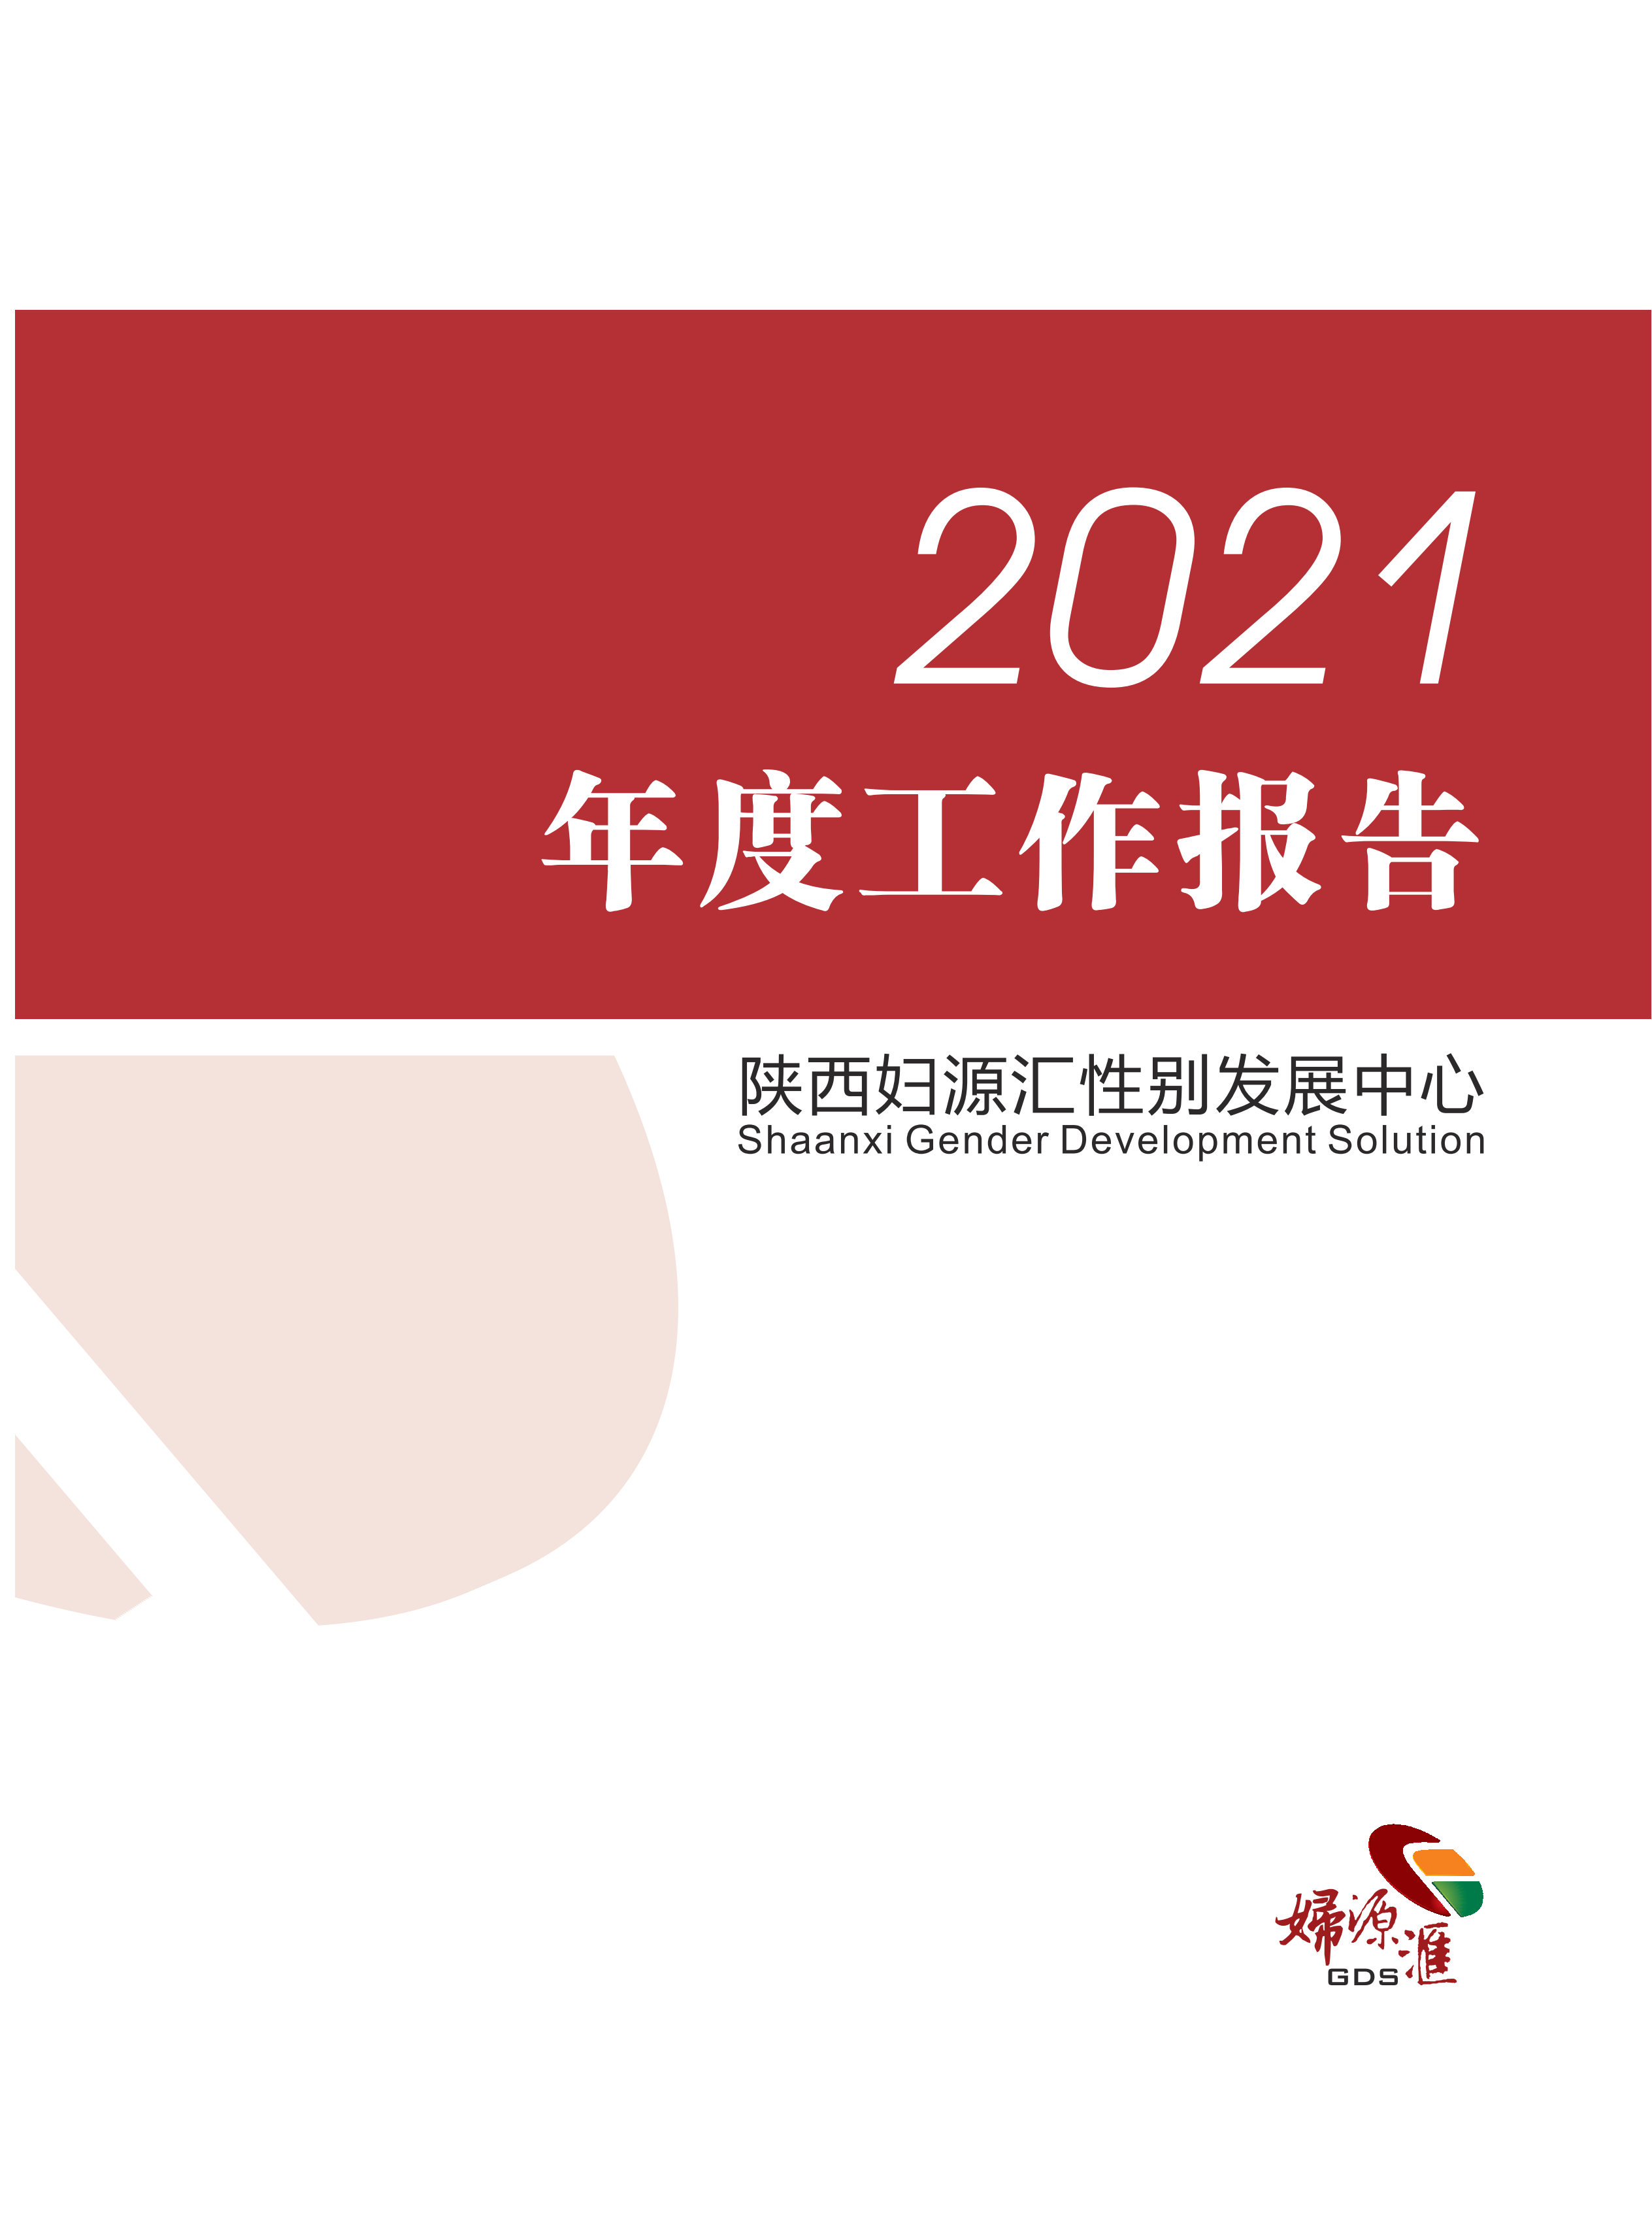 2021年年报.小版_00.png